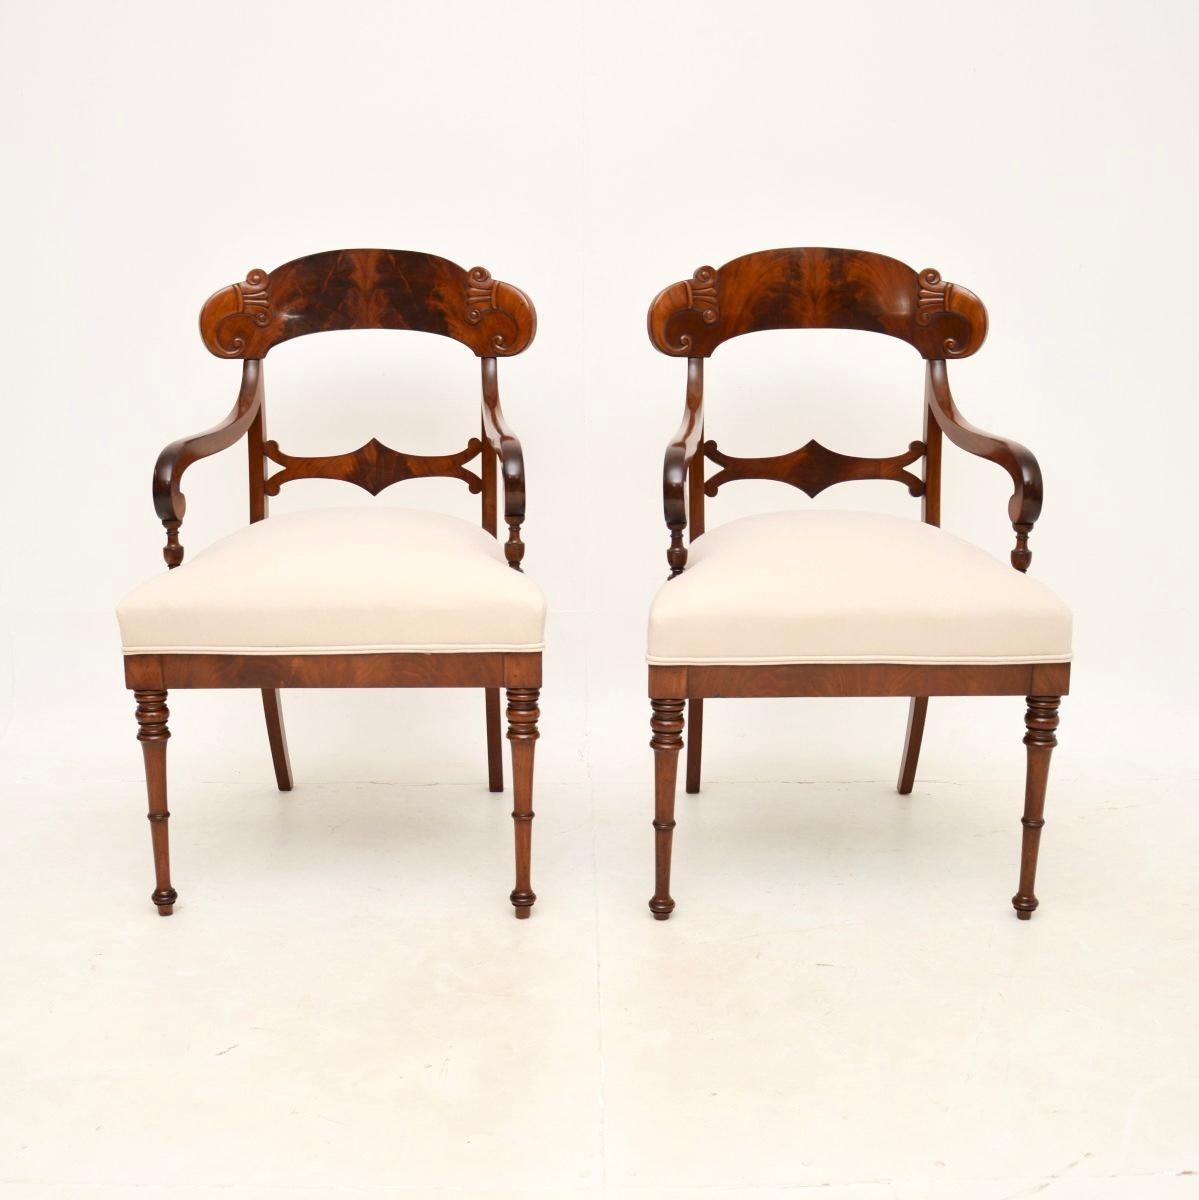 Une superbe paire de fauteuils suédois anciens. Récemment importées de Suède, elles datent de la période 1850-1870.

Ils sont d'une très grande qualité, avec des détails magnifiquement sculptés, des pieds finement tournés et de superbes veinages à